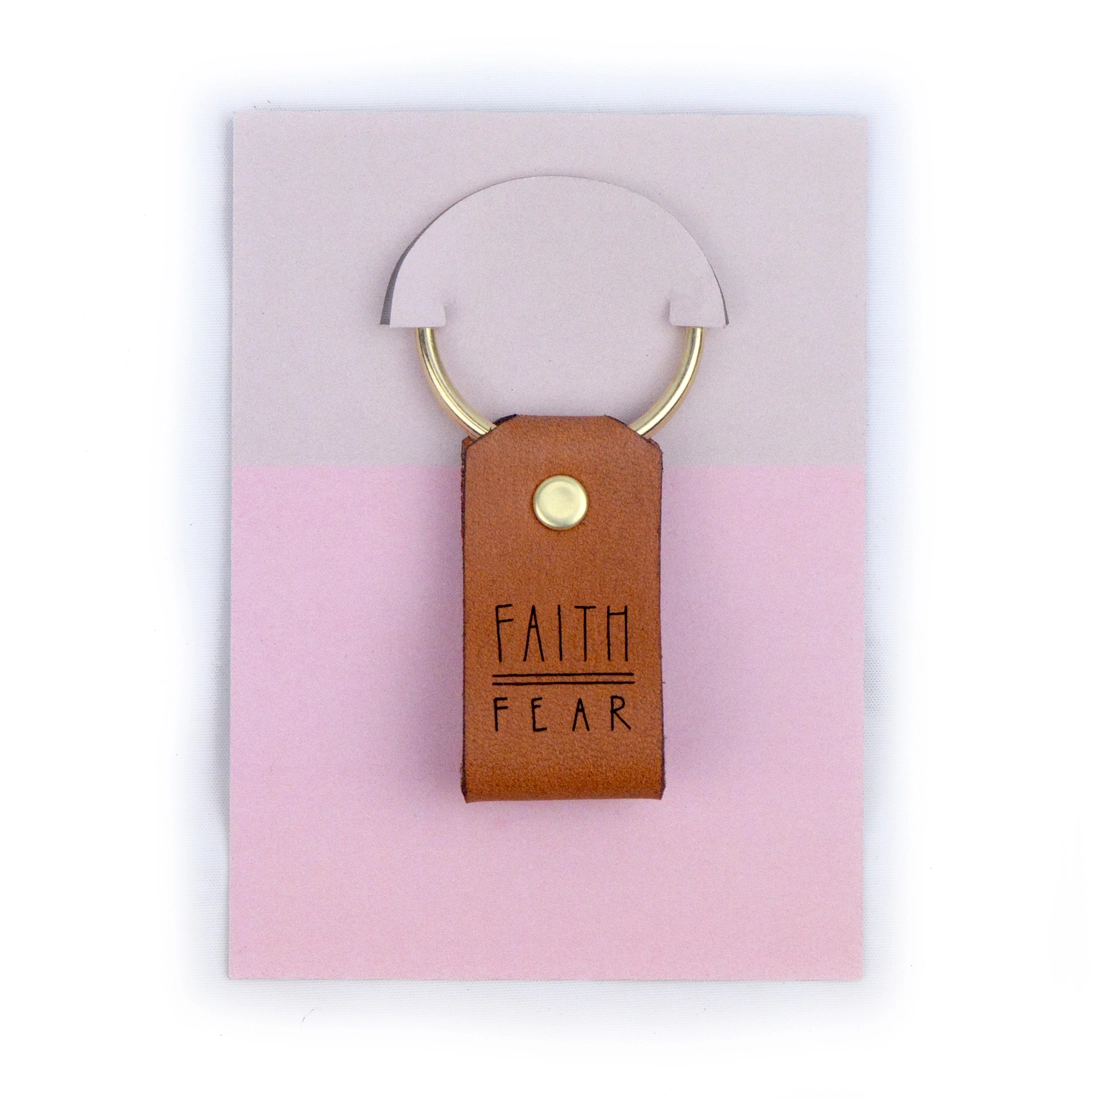 Faith Over Fear - Inspirational Christian Leather Keychains